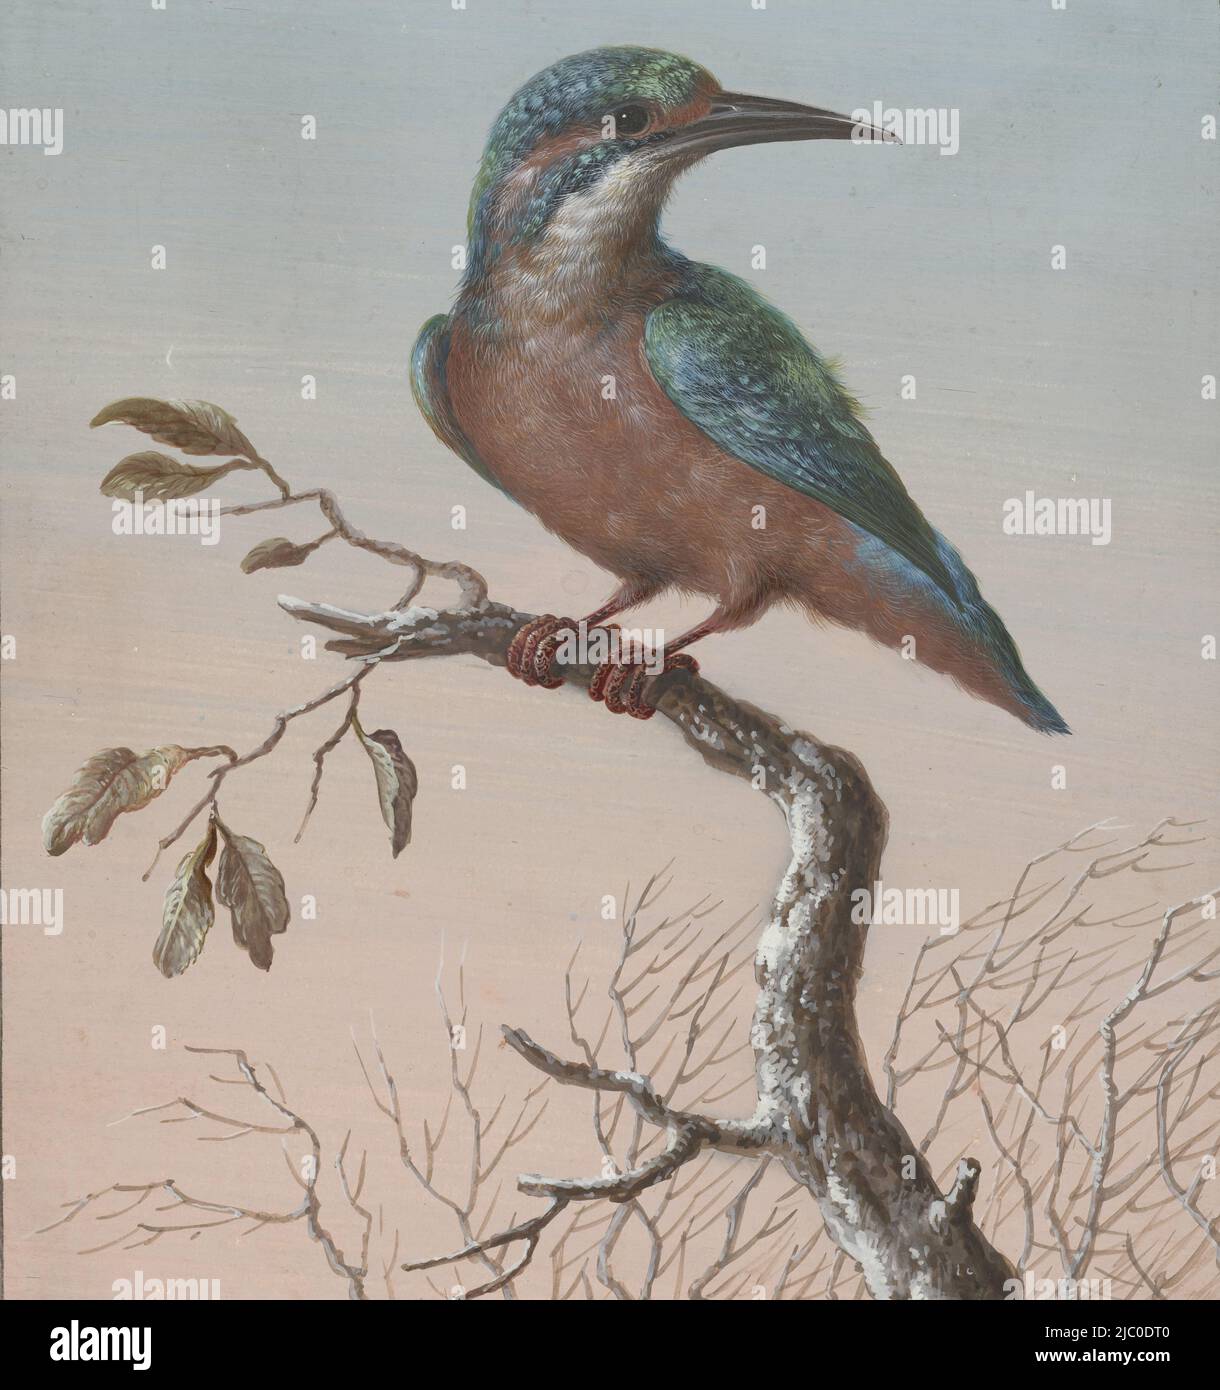 Kingfisher quattro gouache di uccelli (titolo della serie), disegnatrice: Barbara Regina Dietzsch, disegnatrice: Christoph Ludwig agricola, (reiezione dell'attribuzione), 1716 - 1783, carta, pennello, a 199 mm x l 186 mm Foto Stock